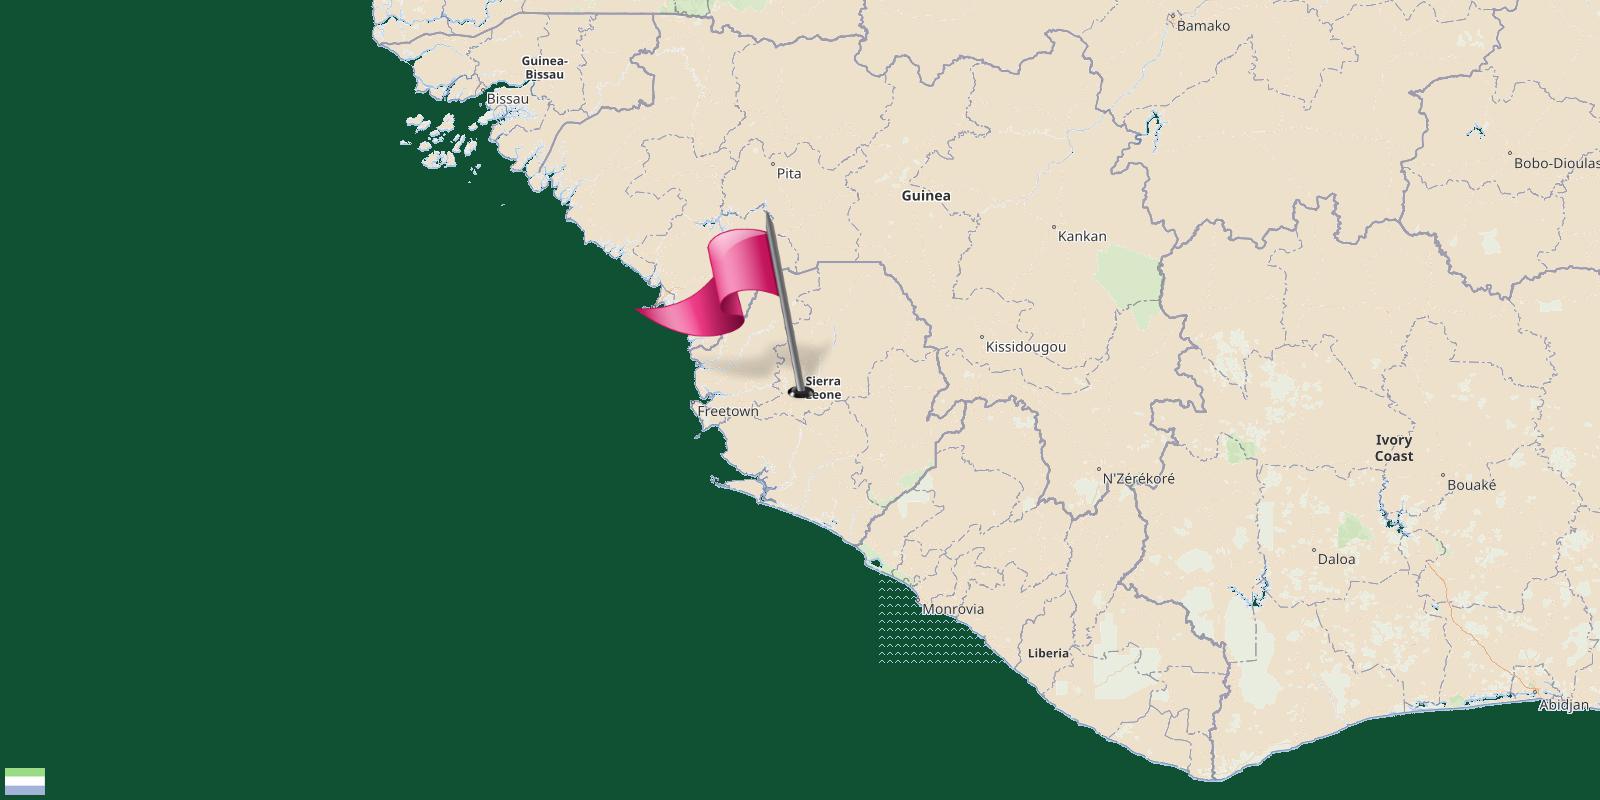 Sierra Leone map